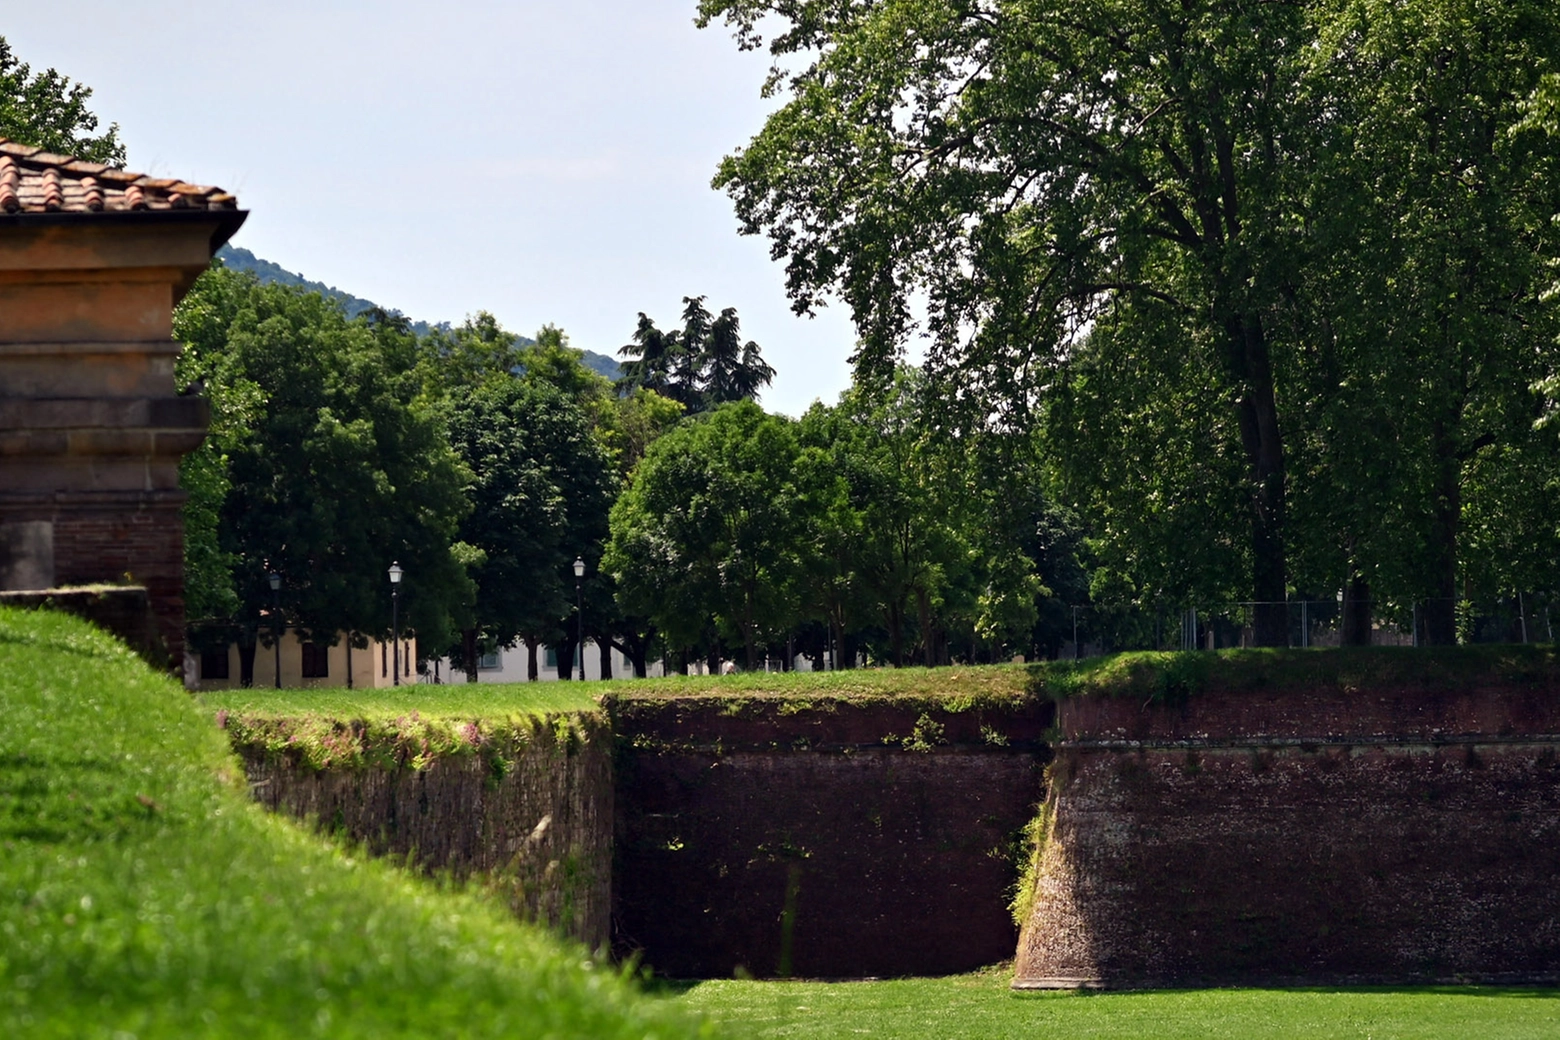 Le mura alberate di Lucca, luogo di passeggio intorno alla città